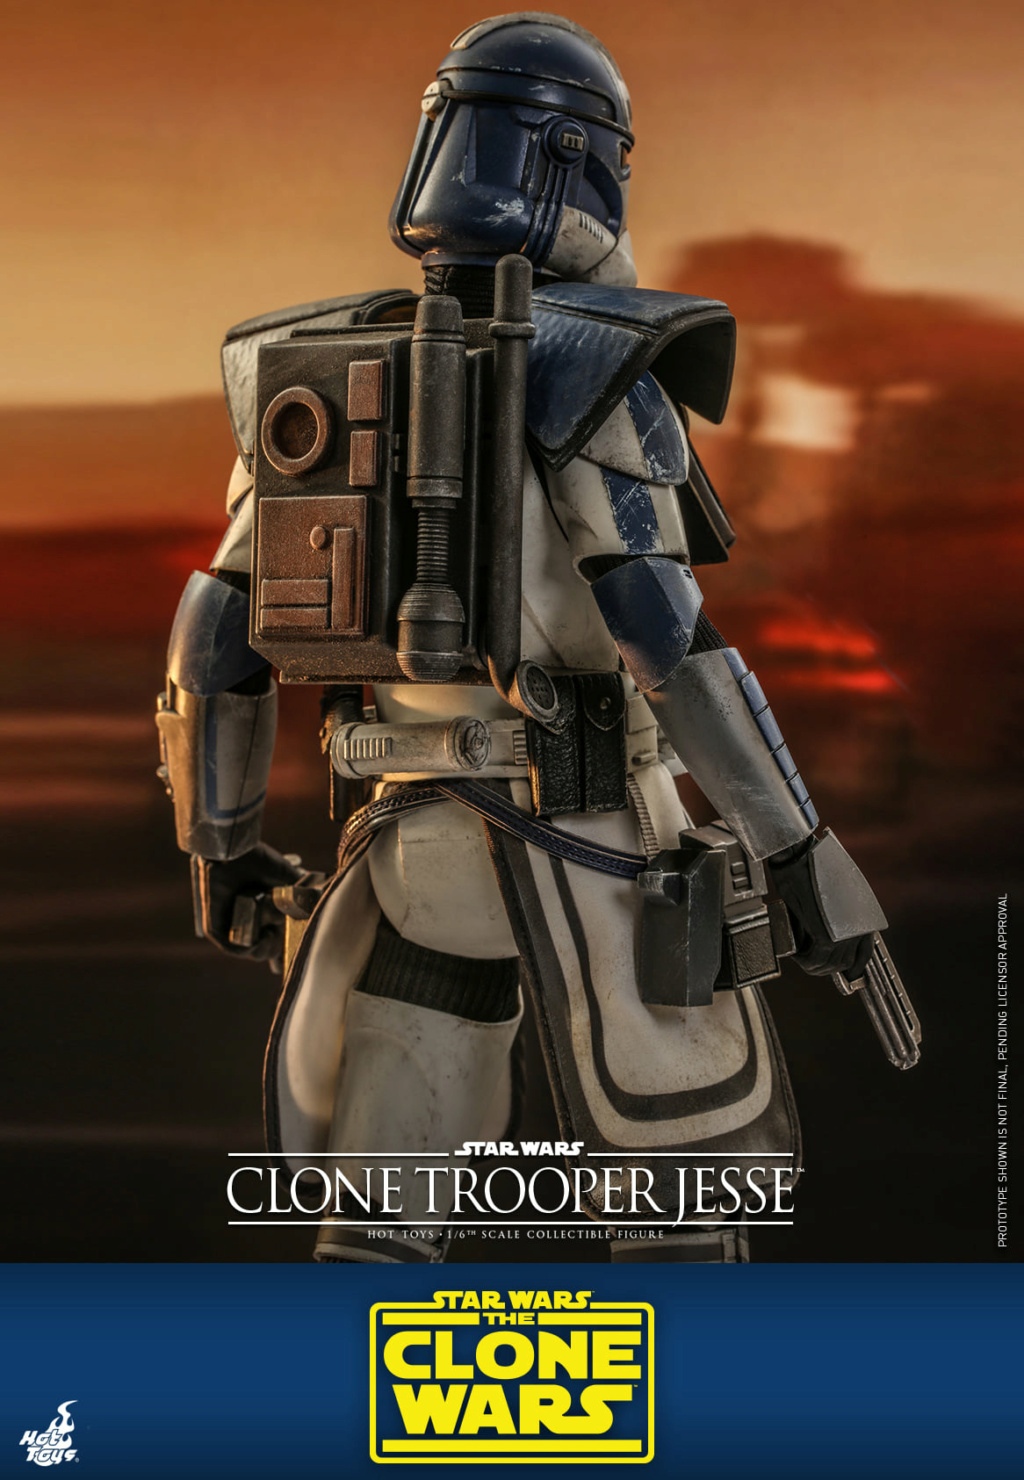 Clone Trooper Jesse - Star Wars: The Clone Wars - Hot Toys Clone_35